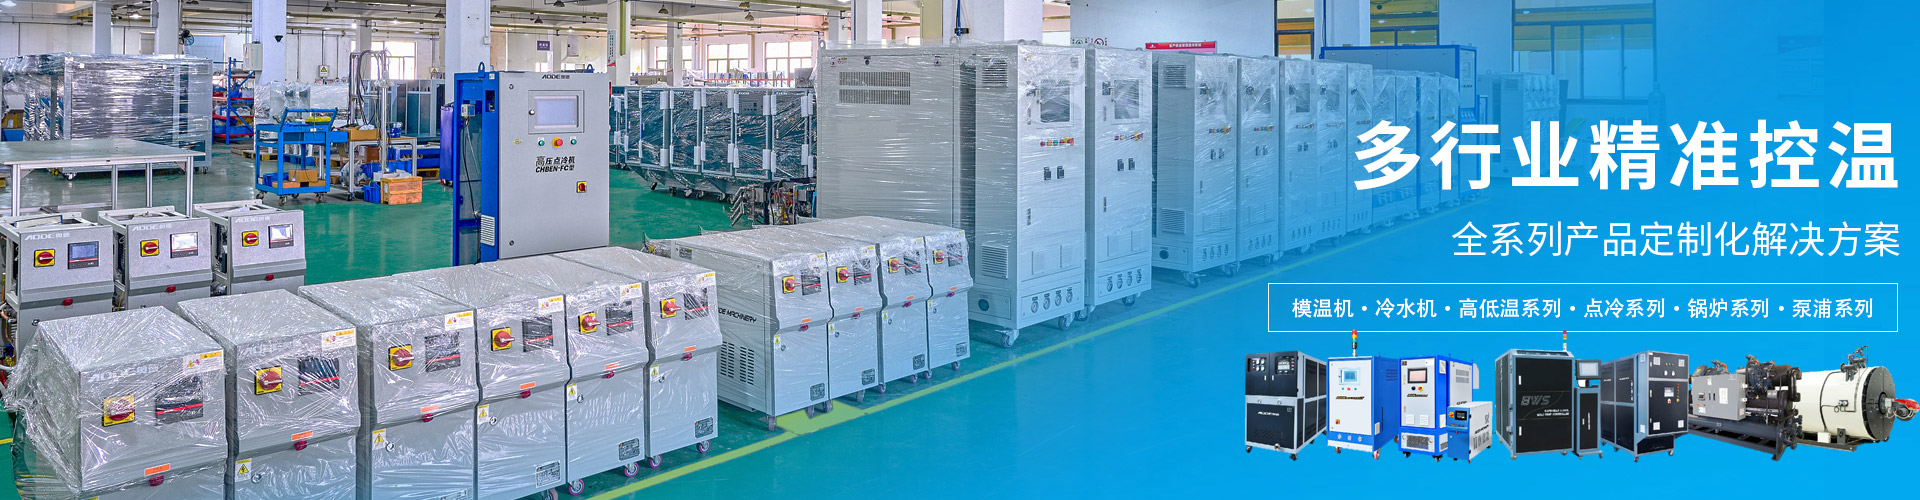 深圳市奧德機械有限公司 多行業精準溫控-專注高端工業溫度控制